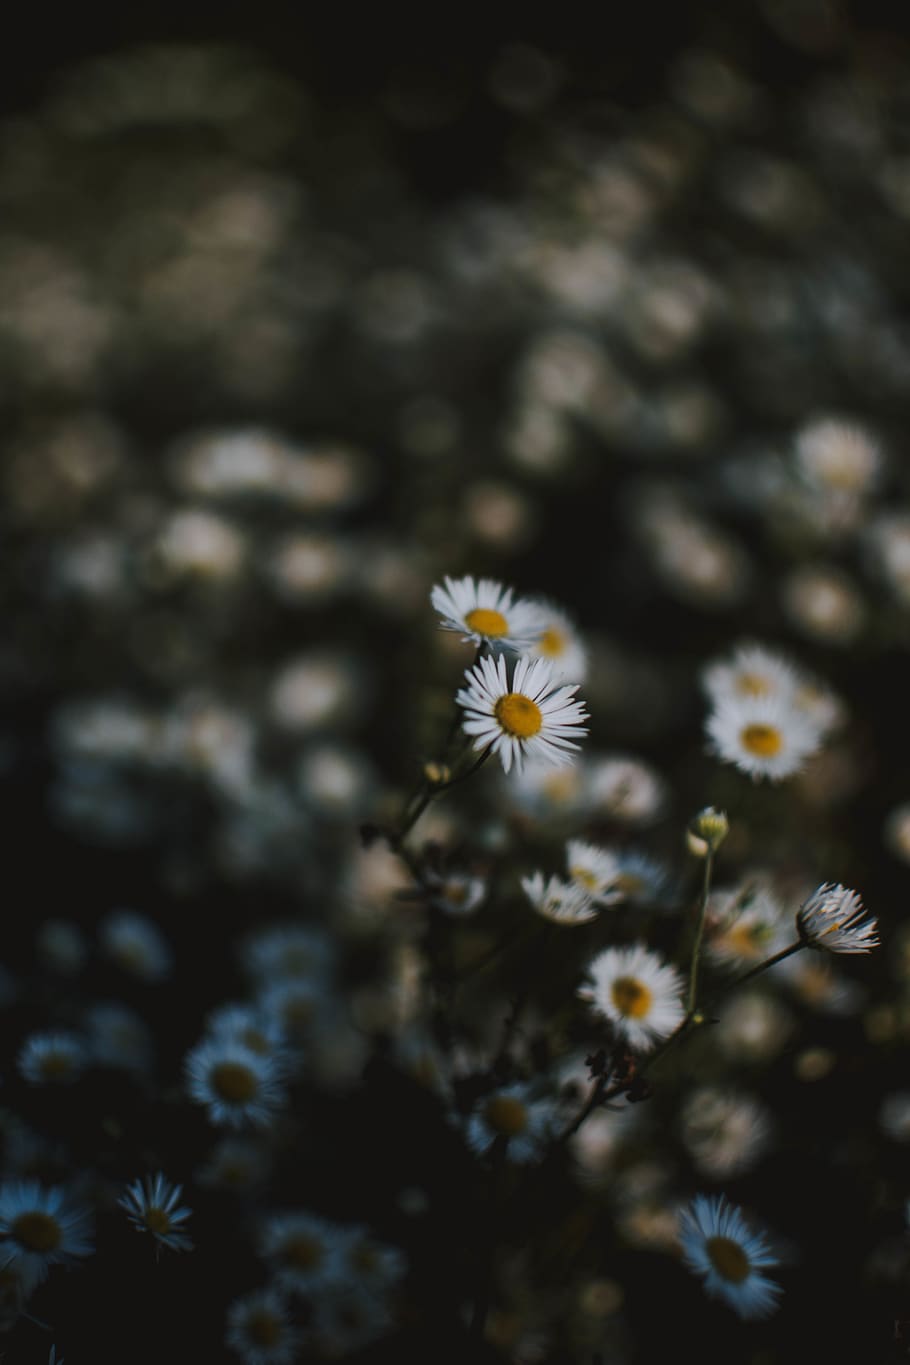 Thiên nhiên vô cùng tuyệt đẹp với những bông hoa cúc trắng tinh khôi. Hãy tưởng tượng mình đang đứng giữa đại ngàn hoa cúc dại, hít thở vào không khí trong lành và ngắm nhìn bất kì nơi đâu bạn cũng chỉ thấy màu trắng tinh khôi. Hãy chiêm ngưỡng bức ảnh này để tìm lại cảm giác bình yên đó.